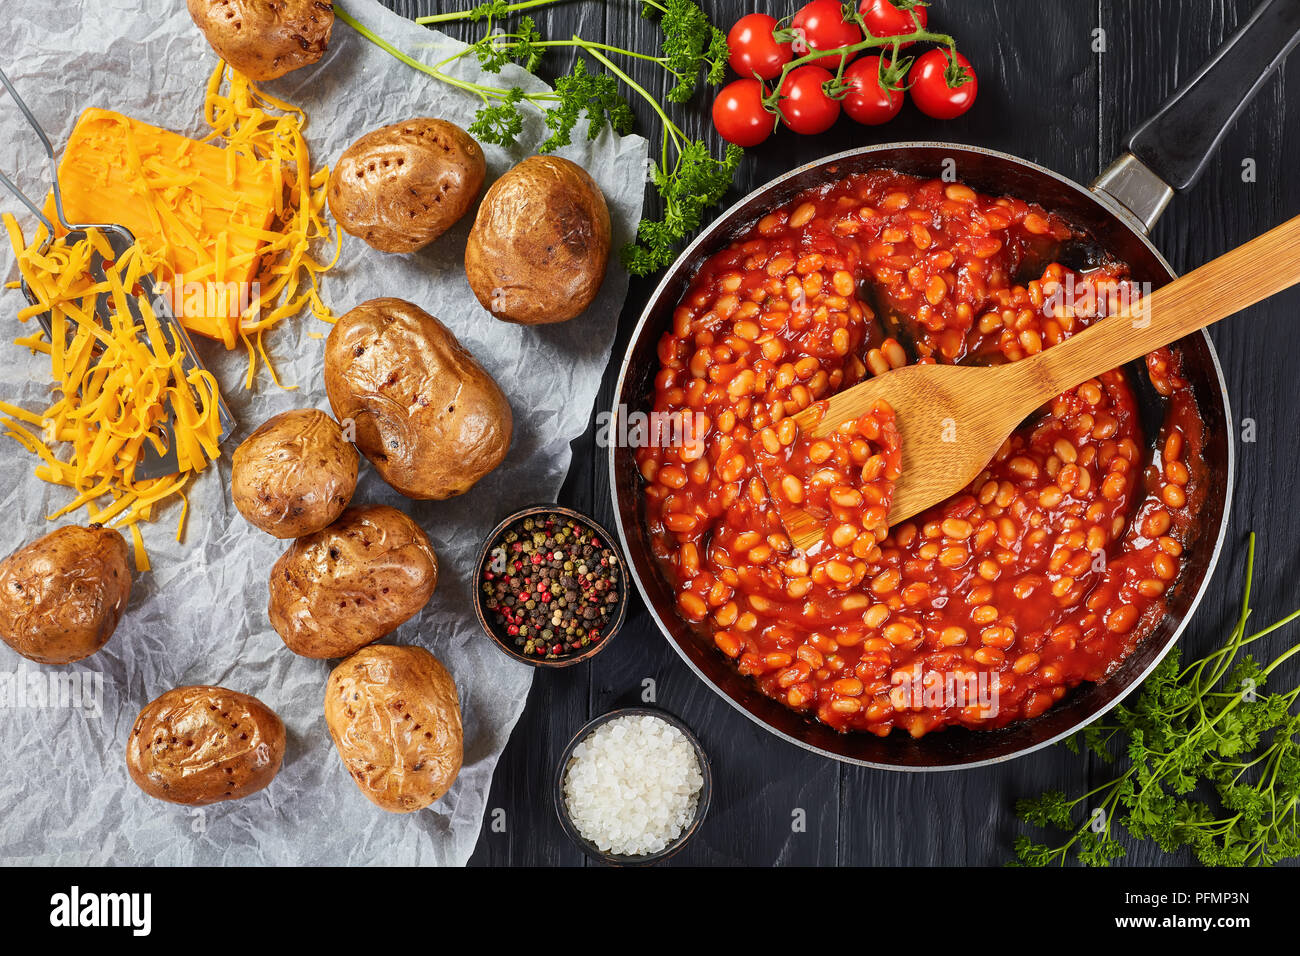 Bohnen mit Tomatensauce in einer Pfanne. gebackene Kartoffel oder Pellkartoffeln mit Goldgelb knusprige Haut auf einem Papier mit Cheddar Käse im Hintergrund, Anzeigen Stockfoto